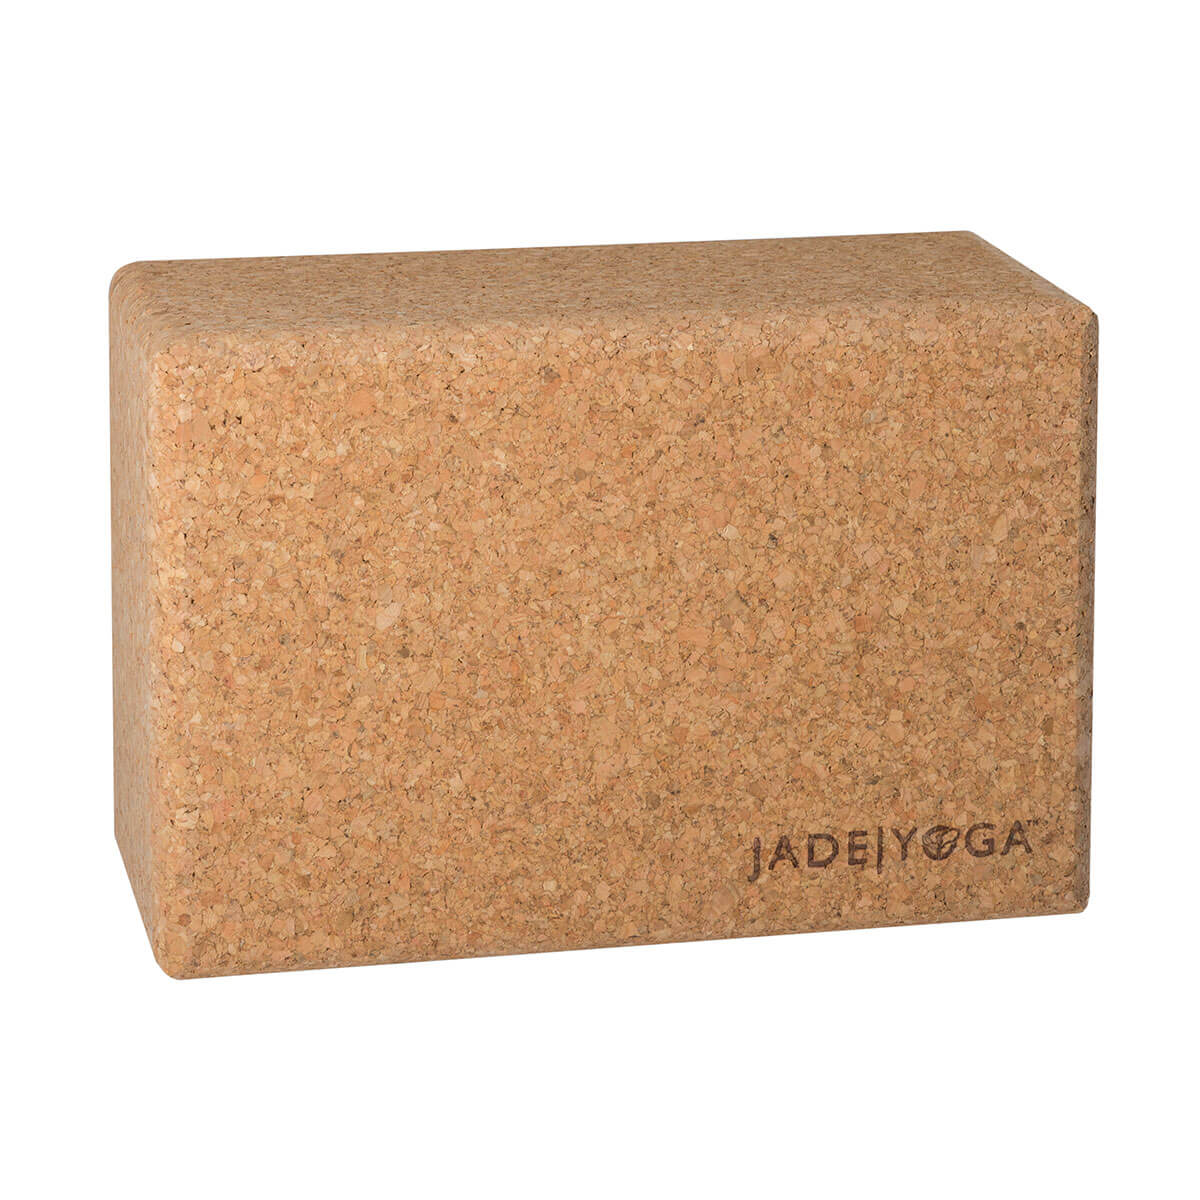 Lean Cork Yoga Block - 2 Pack